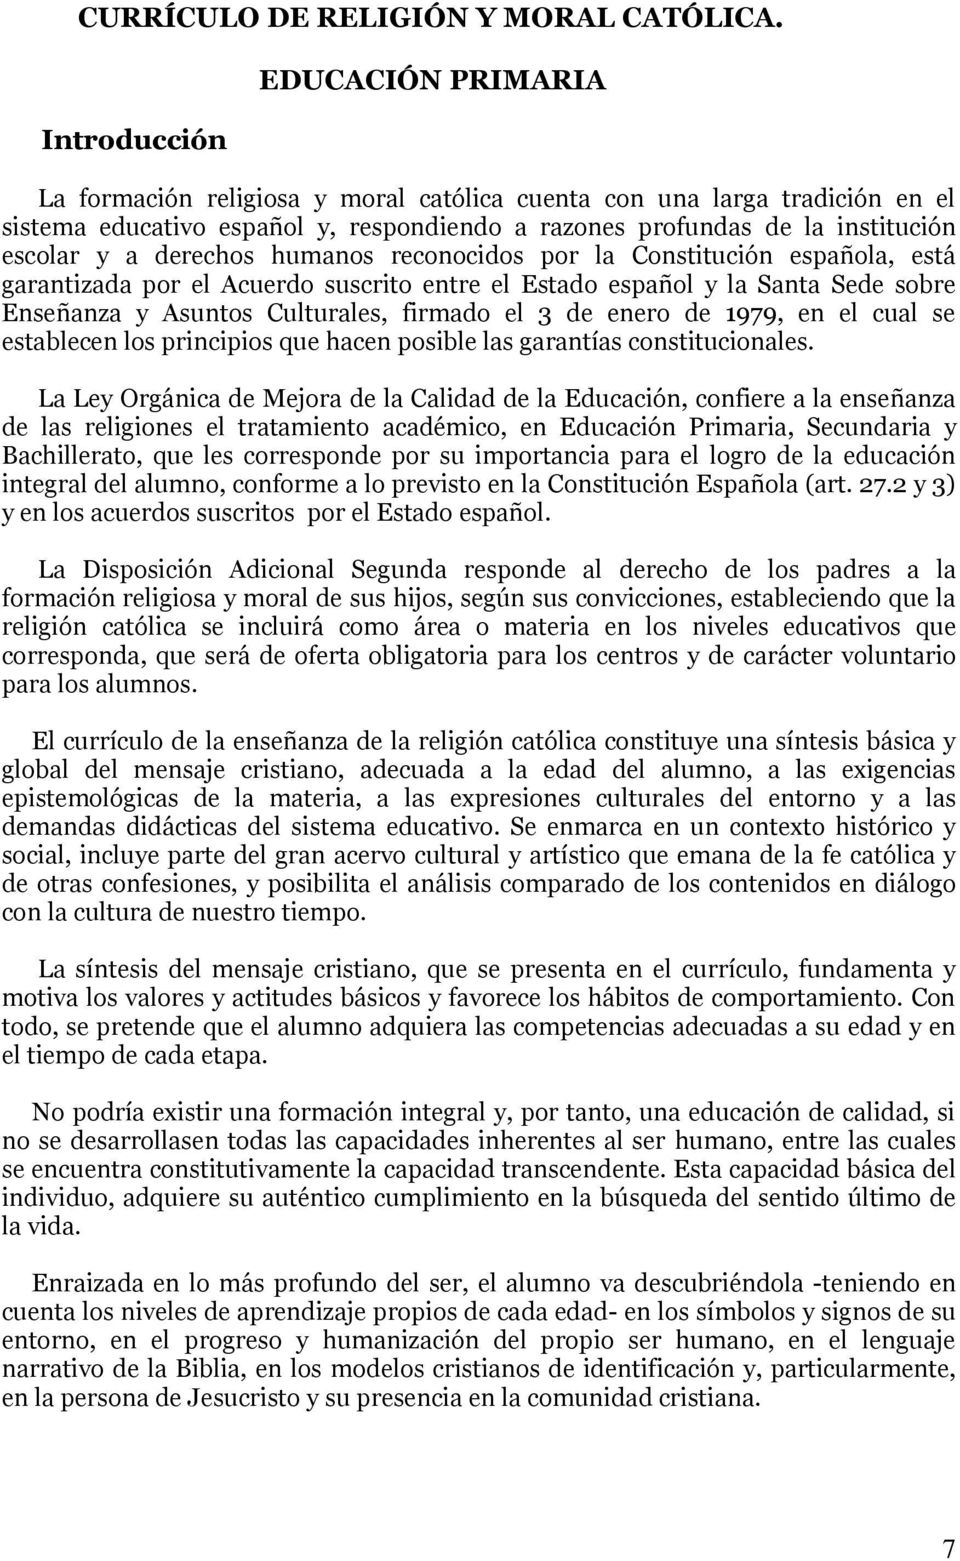 a derechos humanos reconocidos por la Constitución española, está garantizada por el Acuerdo suscrito entre el Estado español y la Santa Sede sobre Enseñanza y Asuntos Culturales, firmado el 3 de